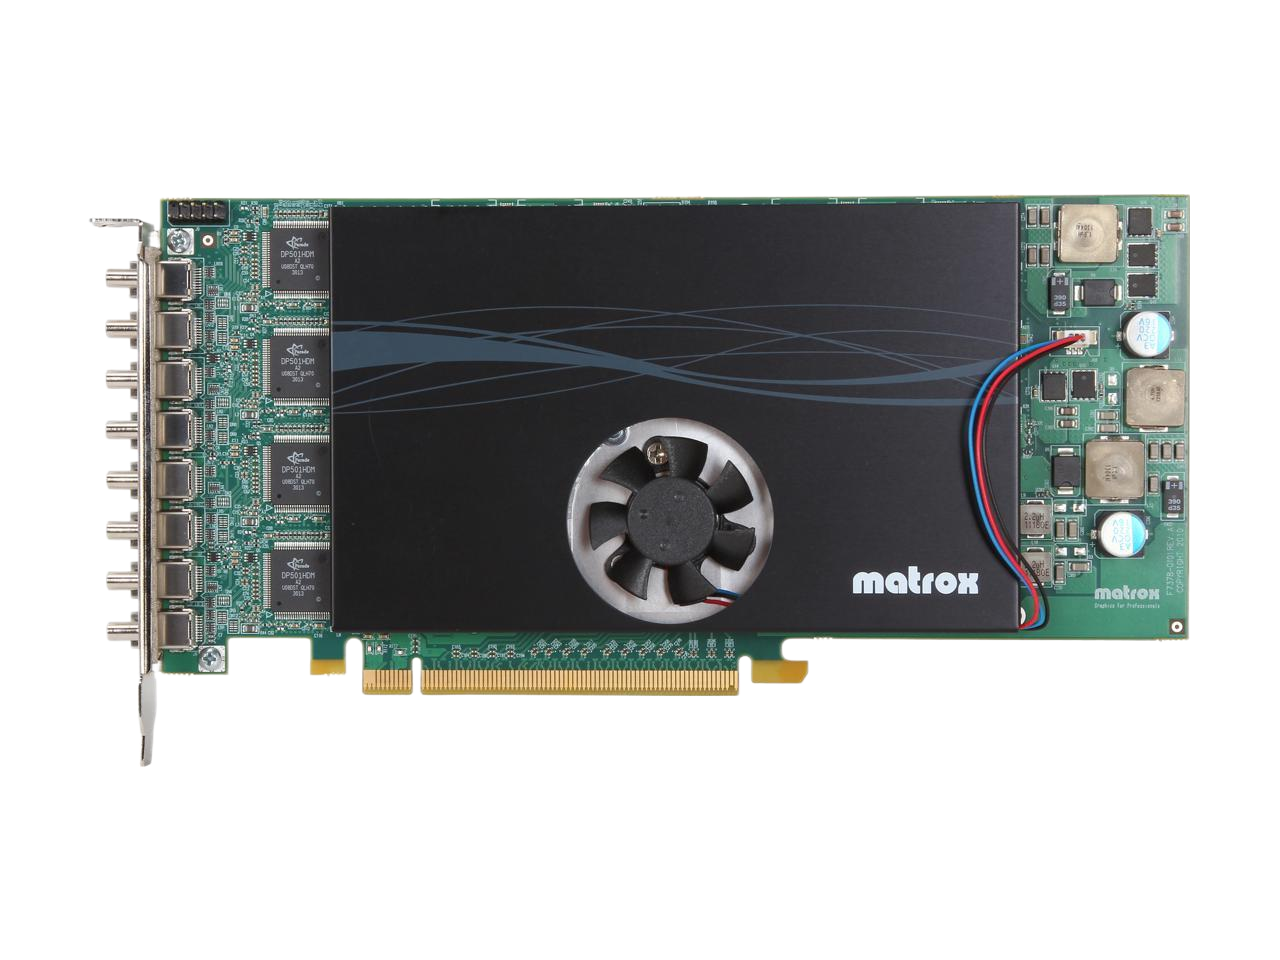 MATROX M9188 PCIe 16 Octal DisplayPort Video card - Matrox M9188 - PCI Express x16 - 2 GB - DDR II SDRAM - Display Port, DVI SL  M9188-E2048F